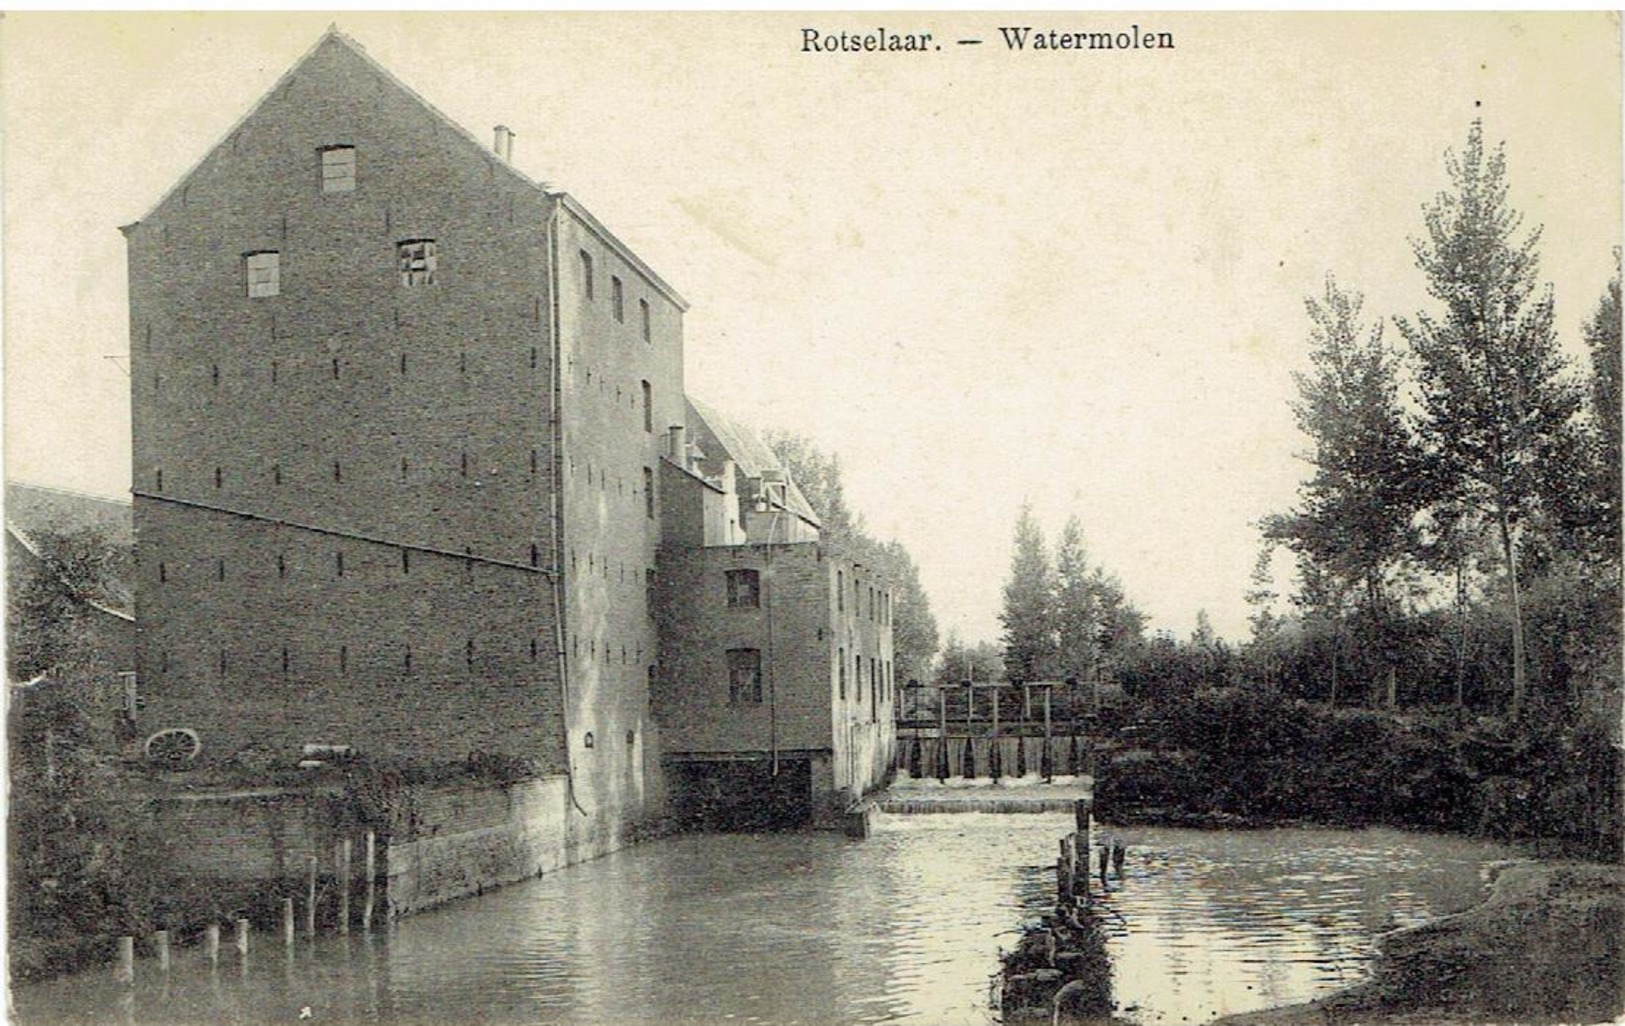 ROTSELAAR - Watermolen - Uitg. Tuerlinckx, Aarschot - Rotselaar